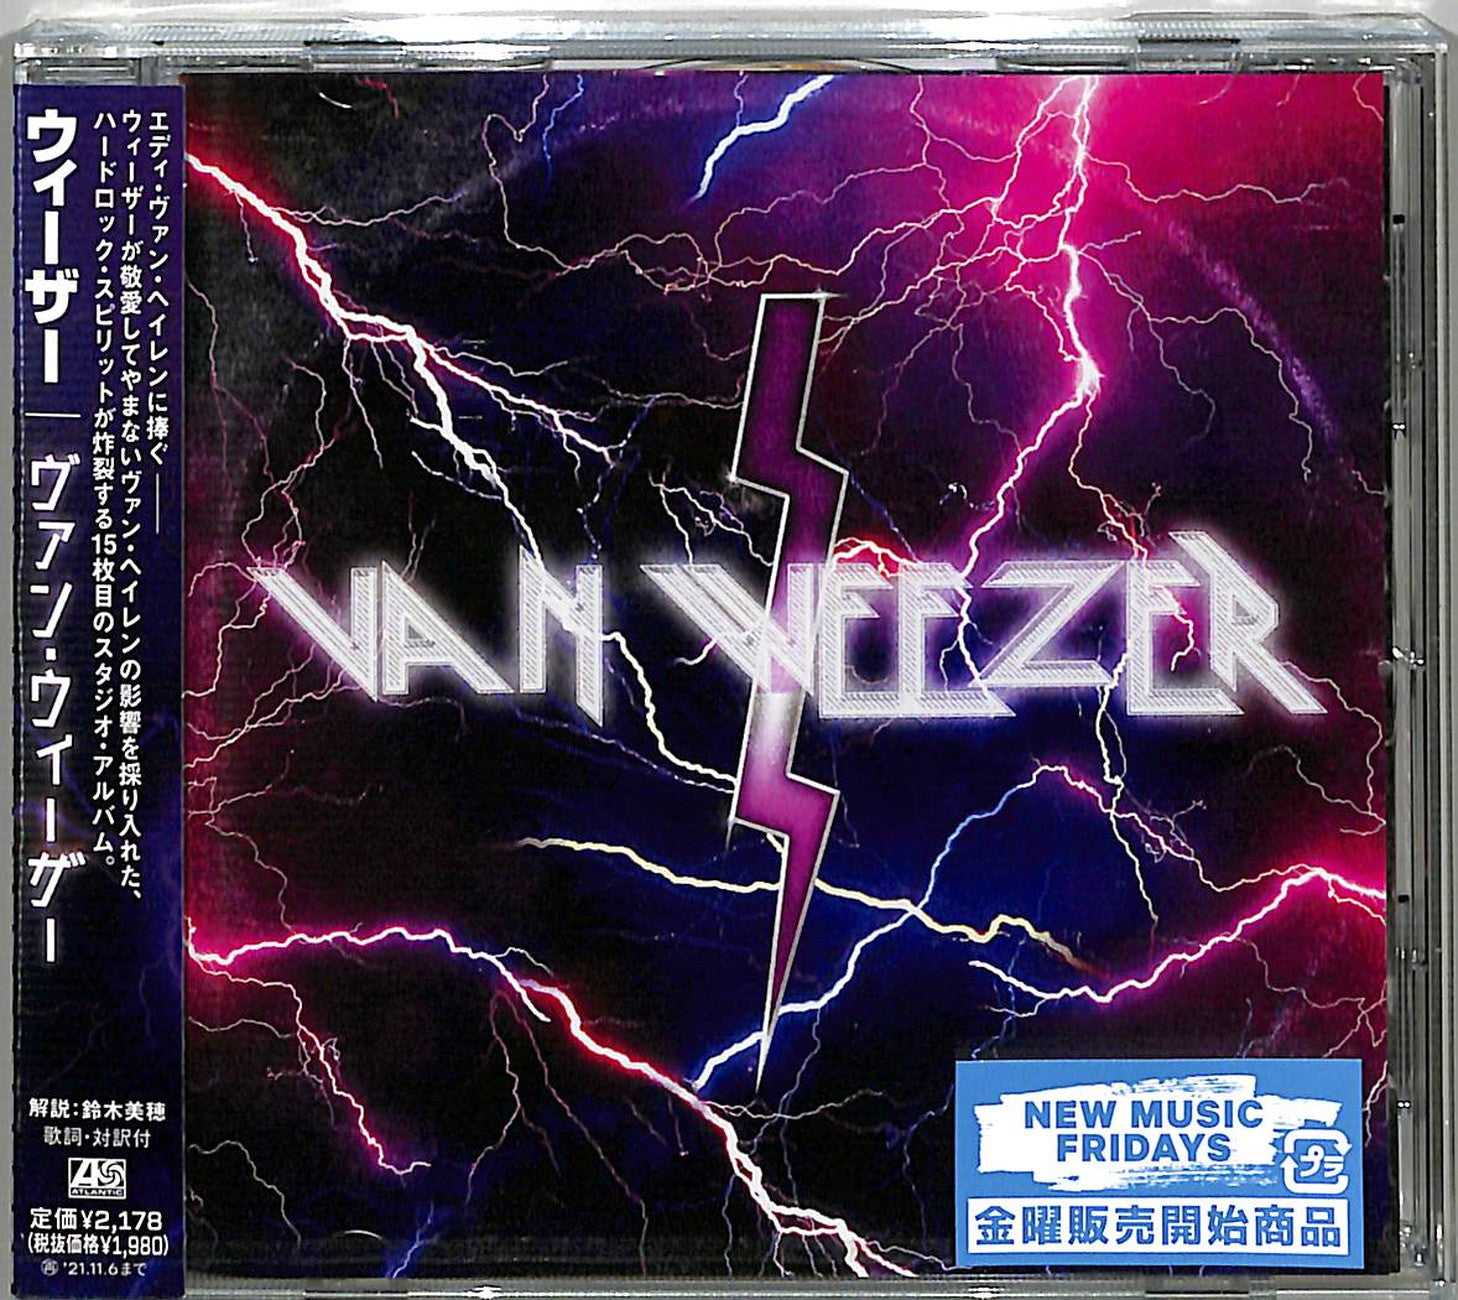 Weezer - Van Weezer - Japan CD – CDs Vinyl Japan Store 